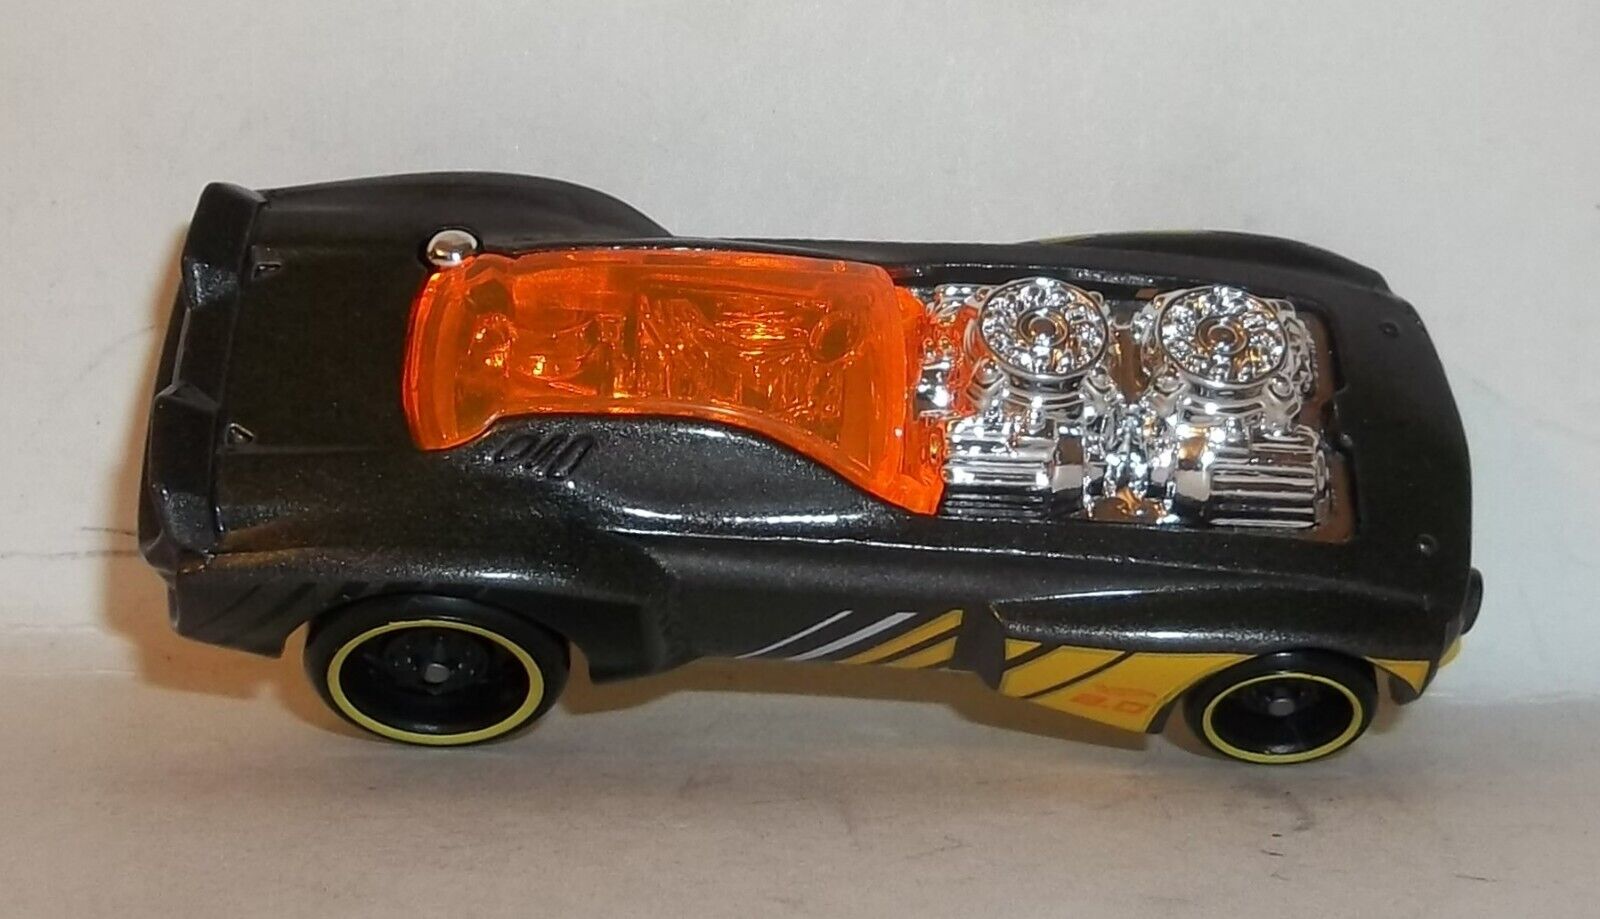 Hot Wheels RC voiture télécommandée Rodger Dodger échelle 1:64 compatible  avec les circuits et pistes orange, jouet pour enfant dès 5 ans, GWB73 en  destockage et reconditionné chez DealBurn